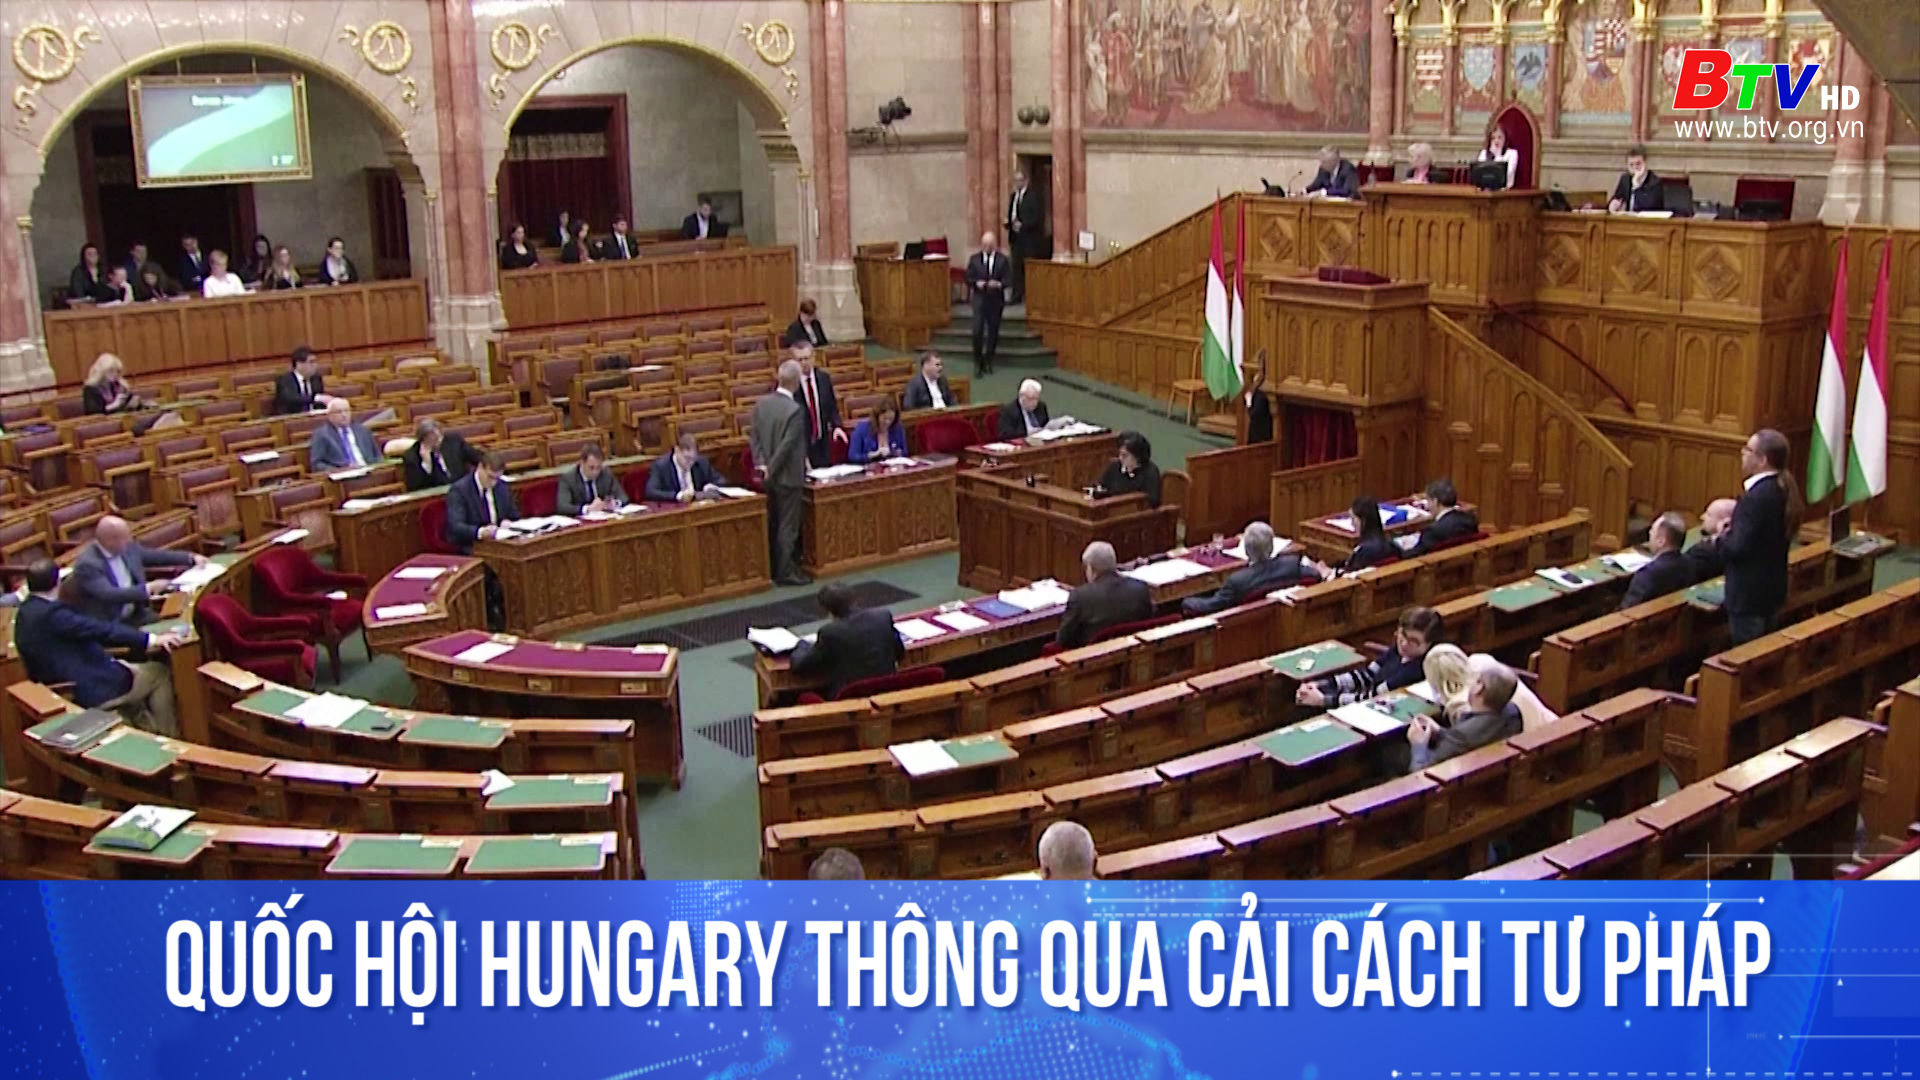 Quốc hội Hungary thông qua cải cách tư pháp